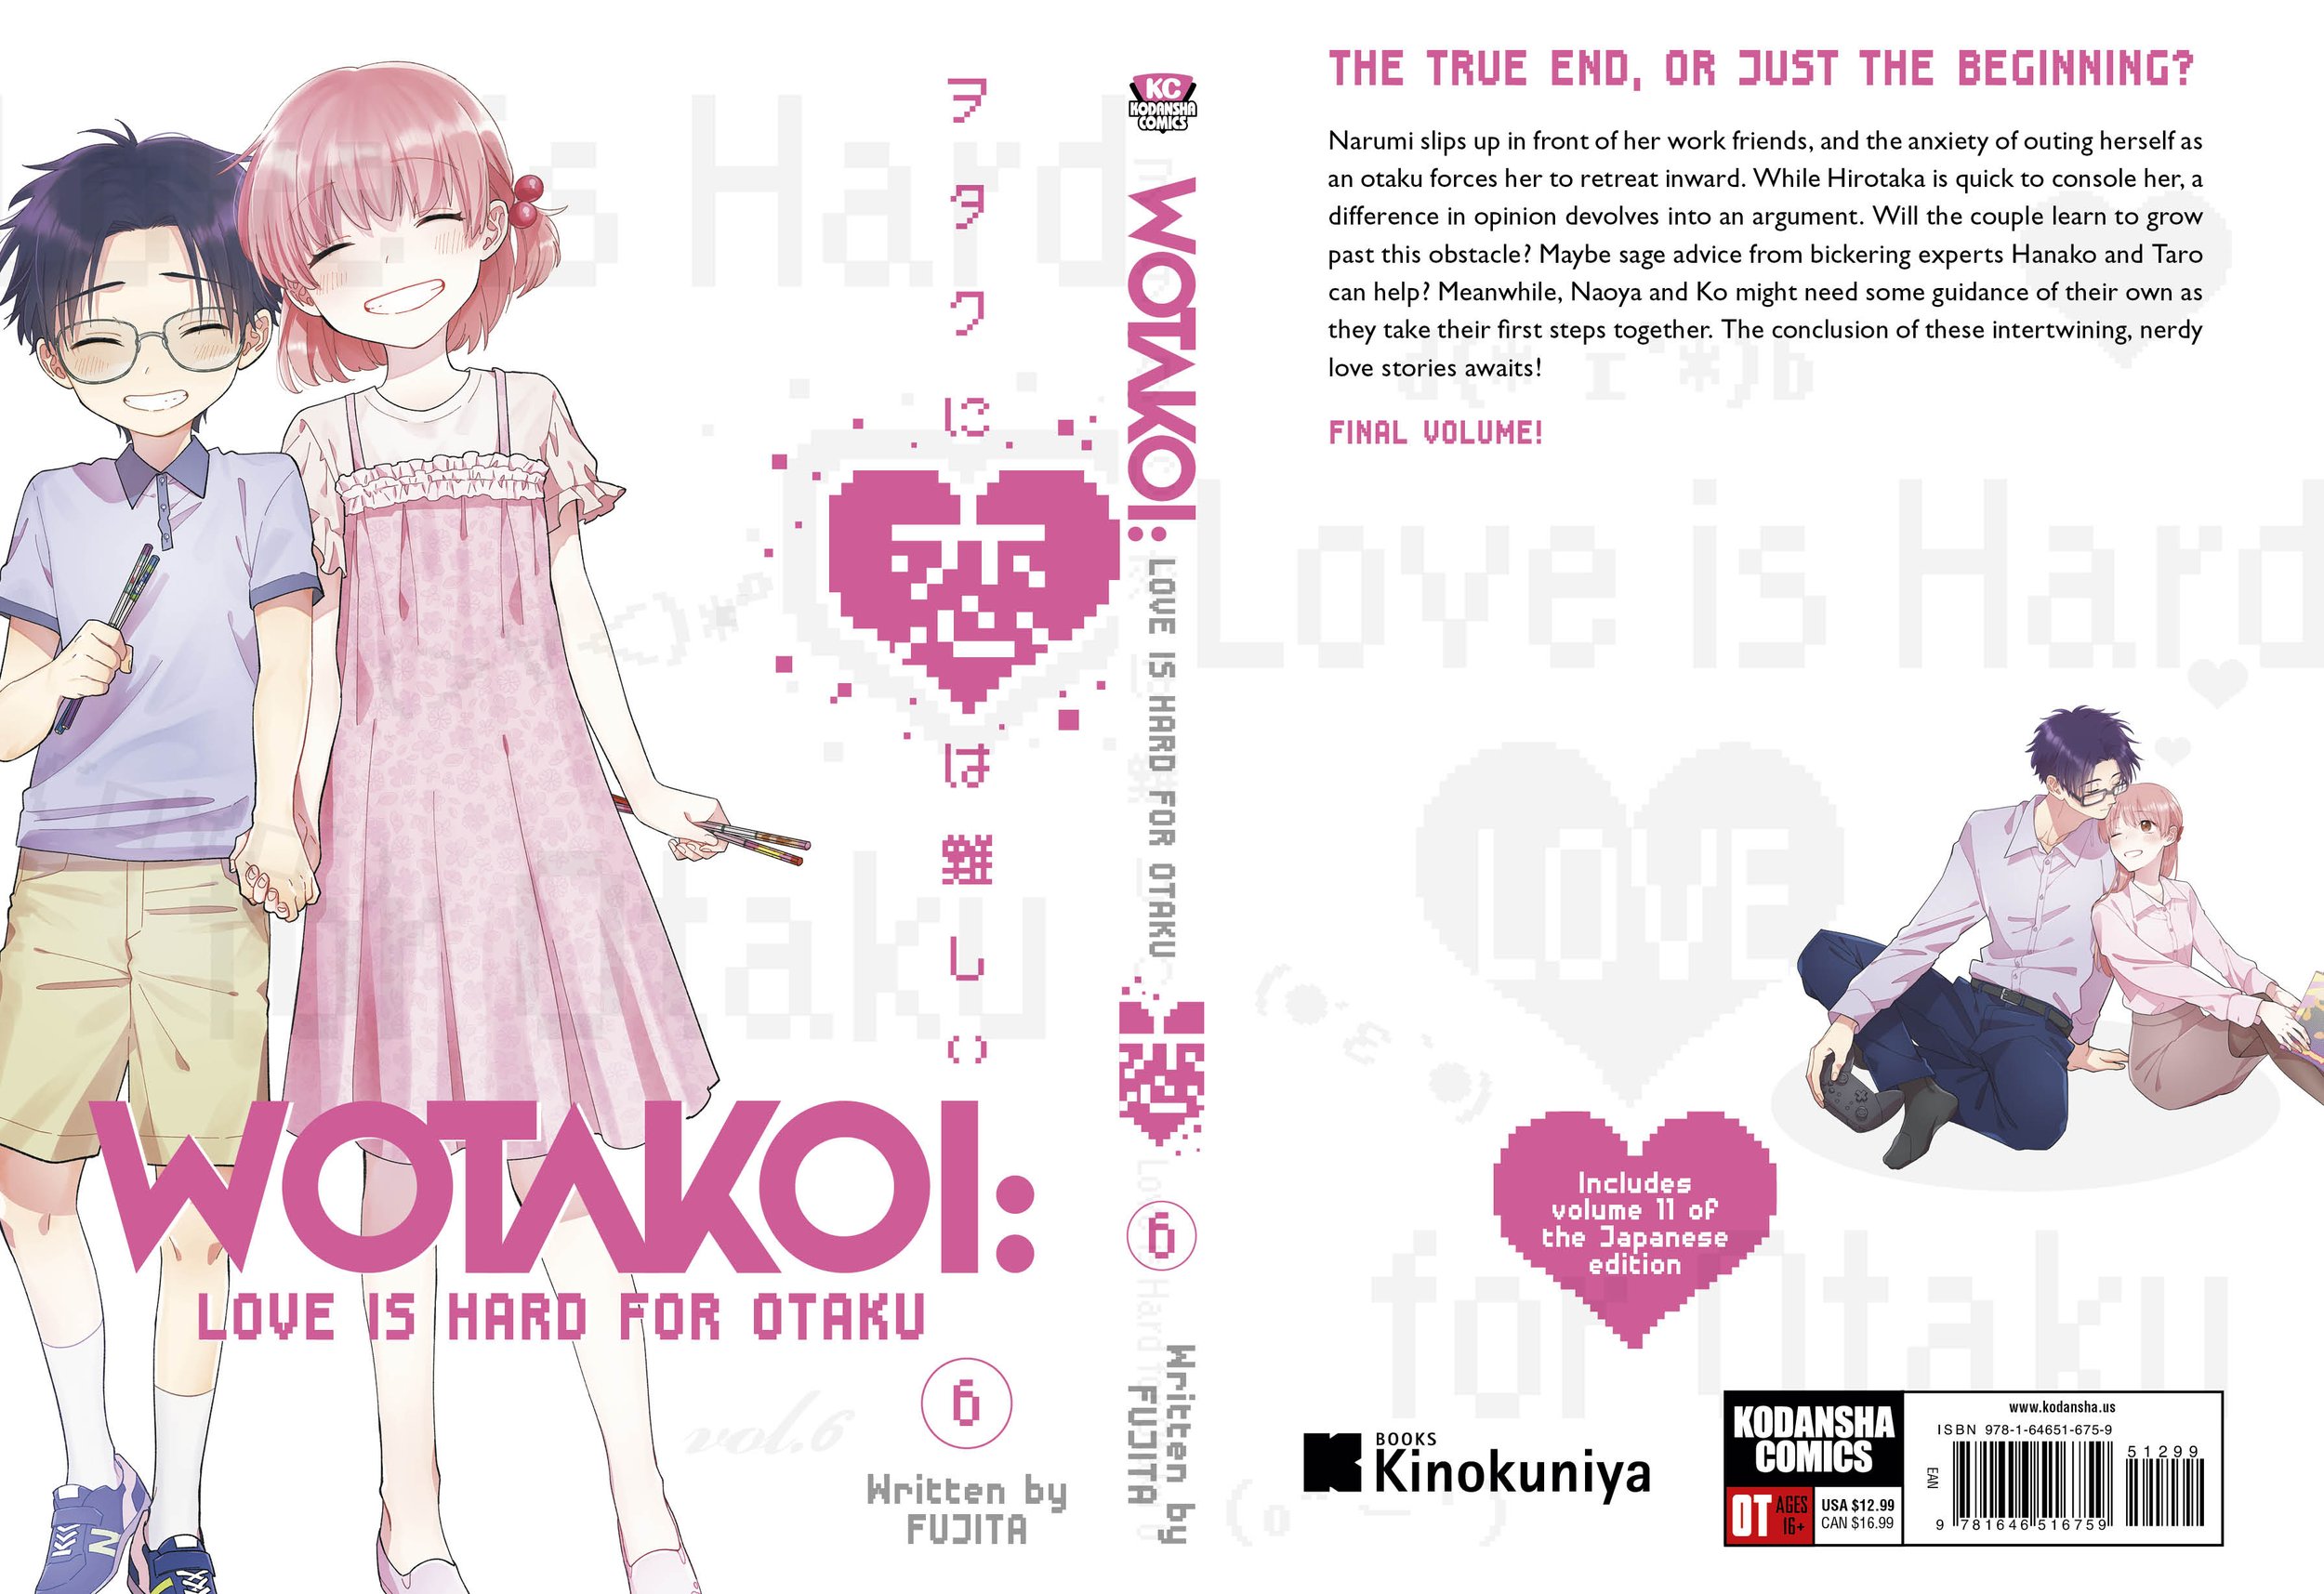 Wotakoi: Wotaku ni Koi wa Muzukashii Vol.6 Japanese Manga Comic Book  9784758009874 